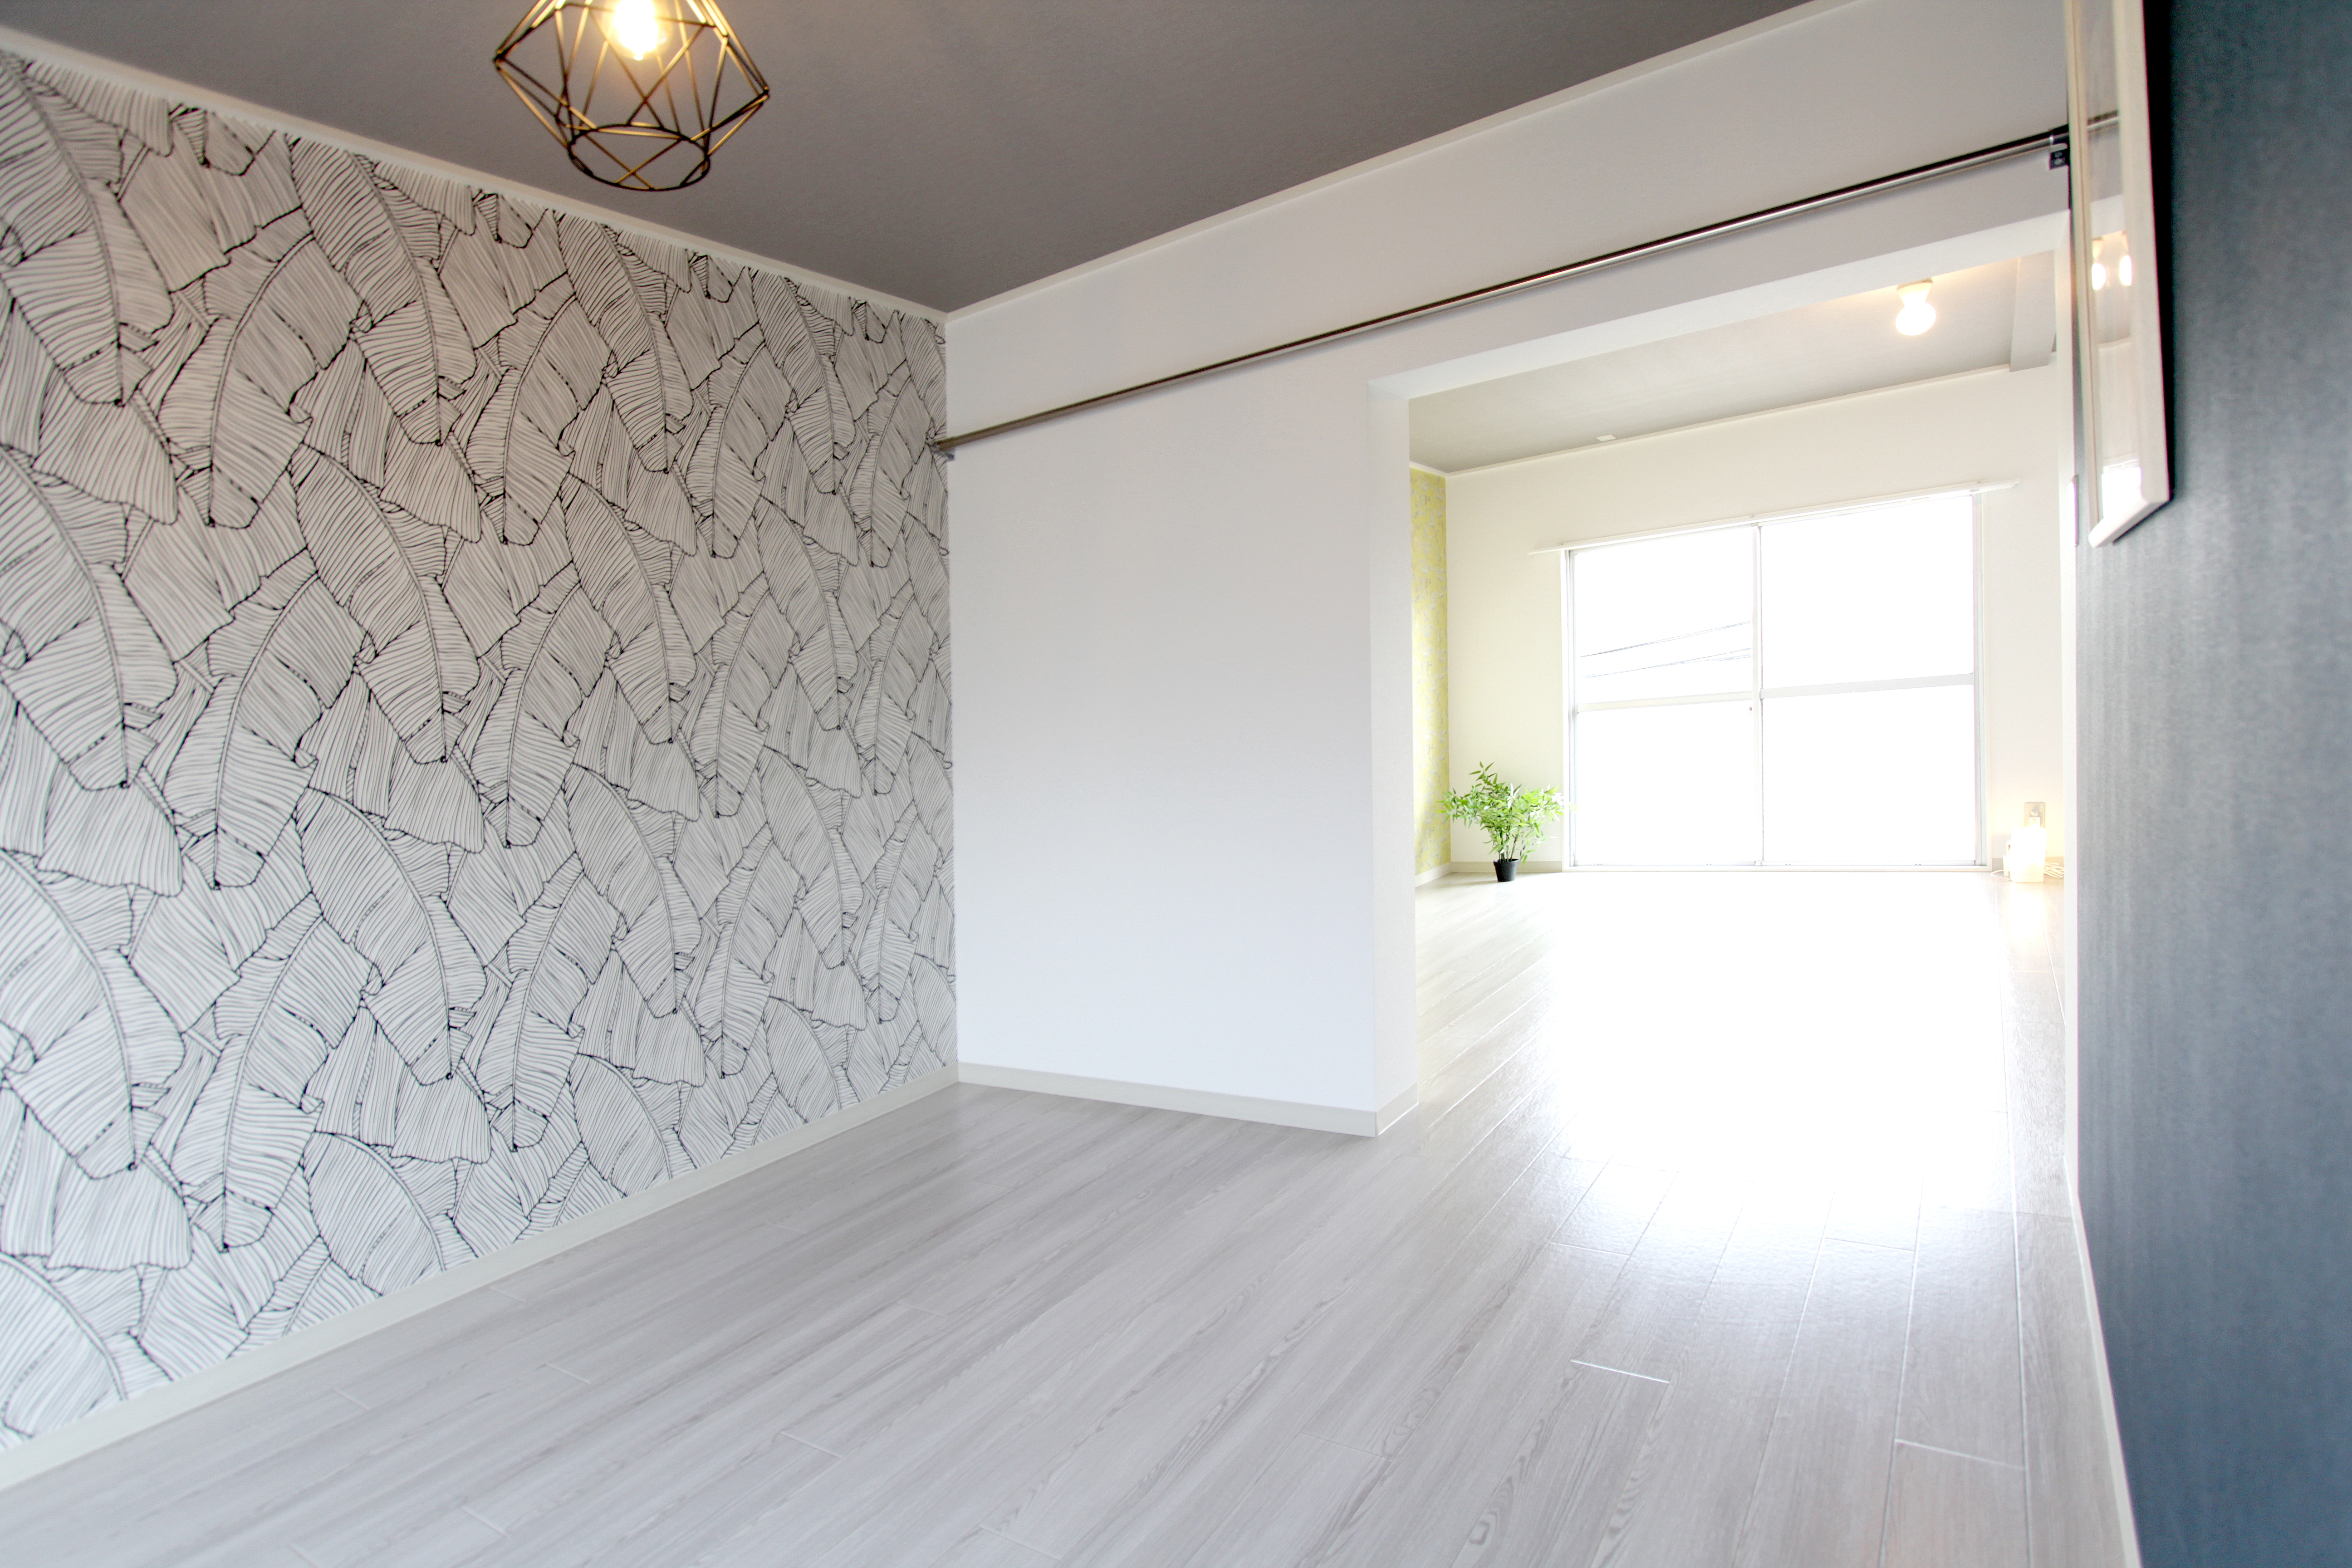 賃貸の和室を洋室へ 押入れをクローゼットへリフォームして空室対策 名古屋の空室対策リフォームは有限会社レトロ デザイン